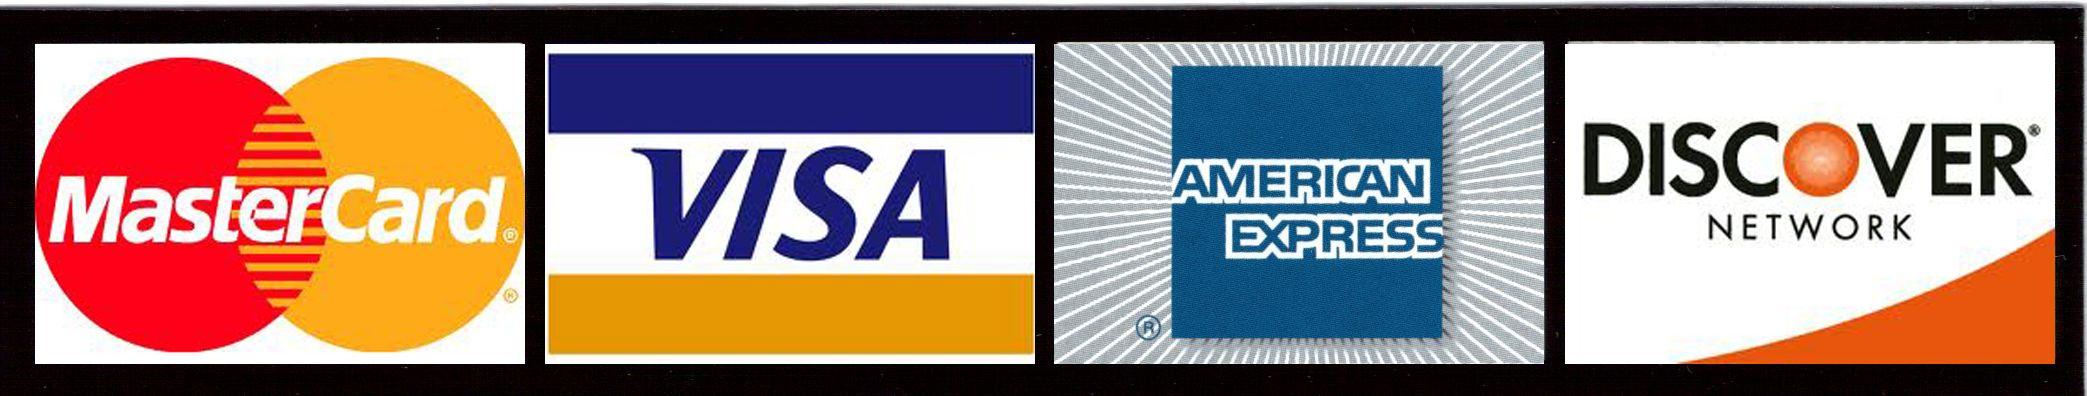 Visa MasterCard Discover Logo - Visa mastercard discover Logos